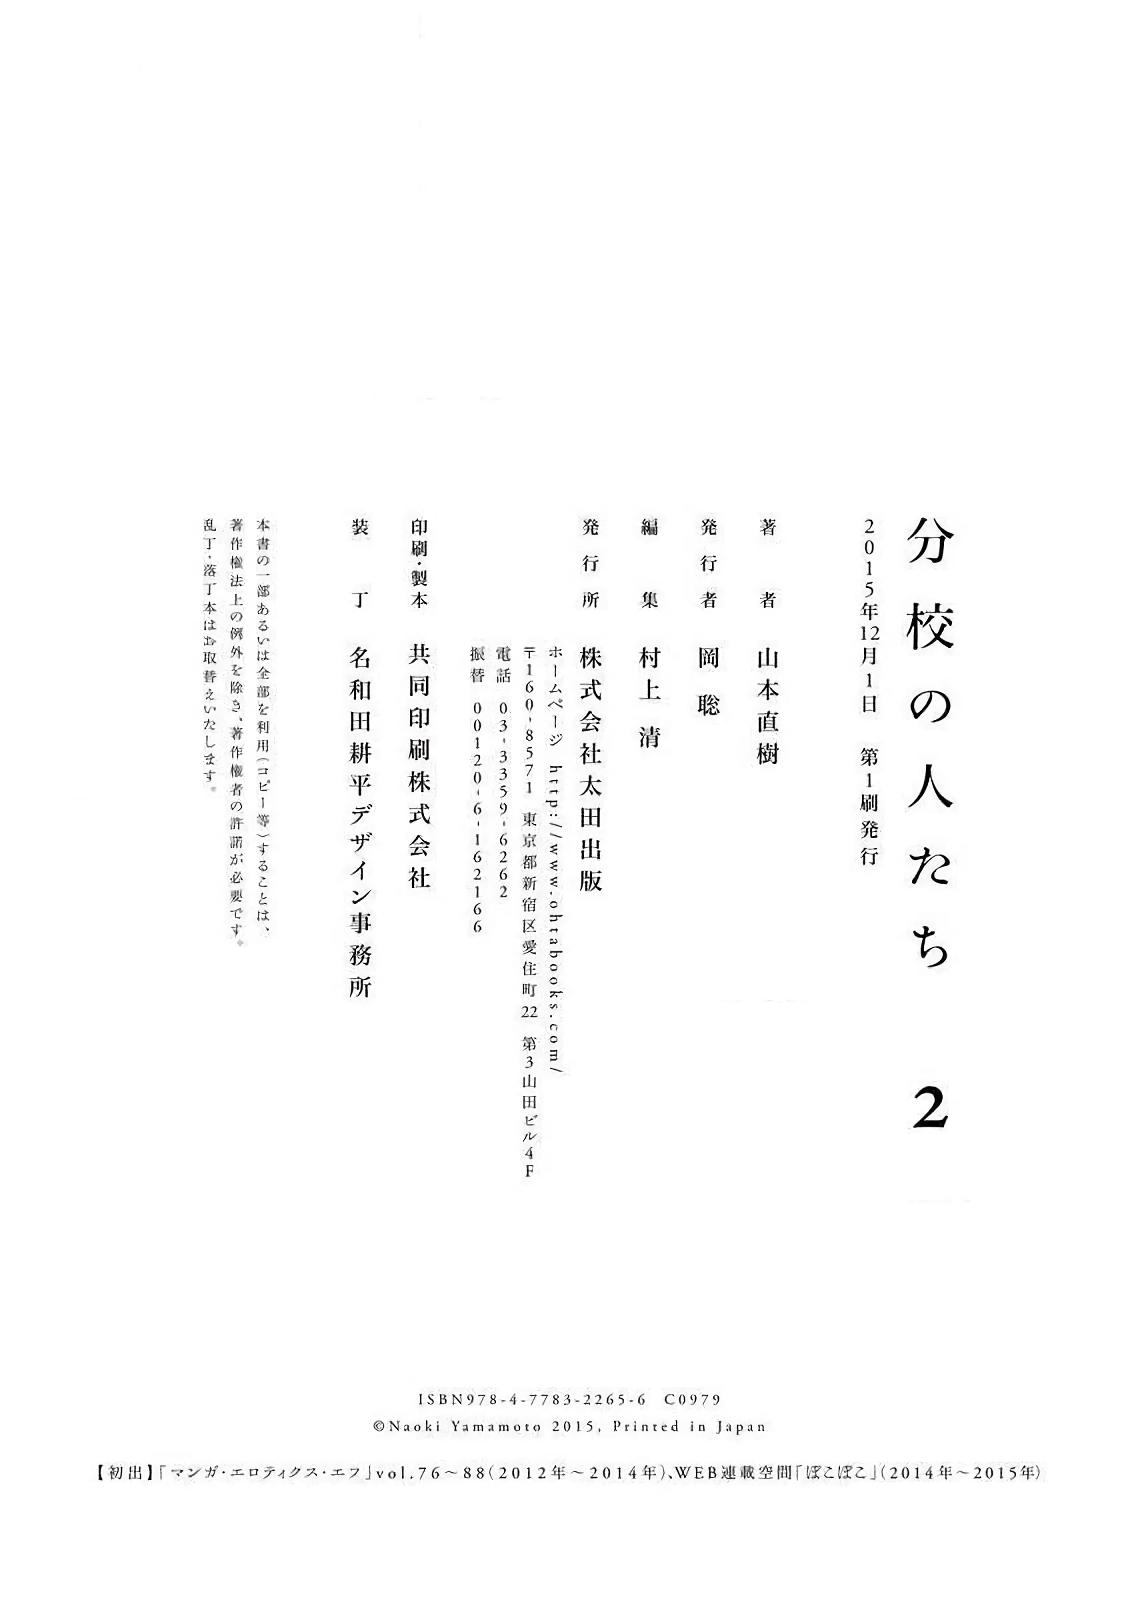 【yamamoto naoki】bunkou no hitotachi2 189